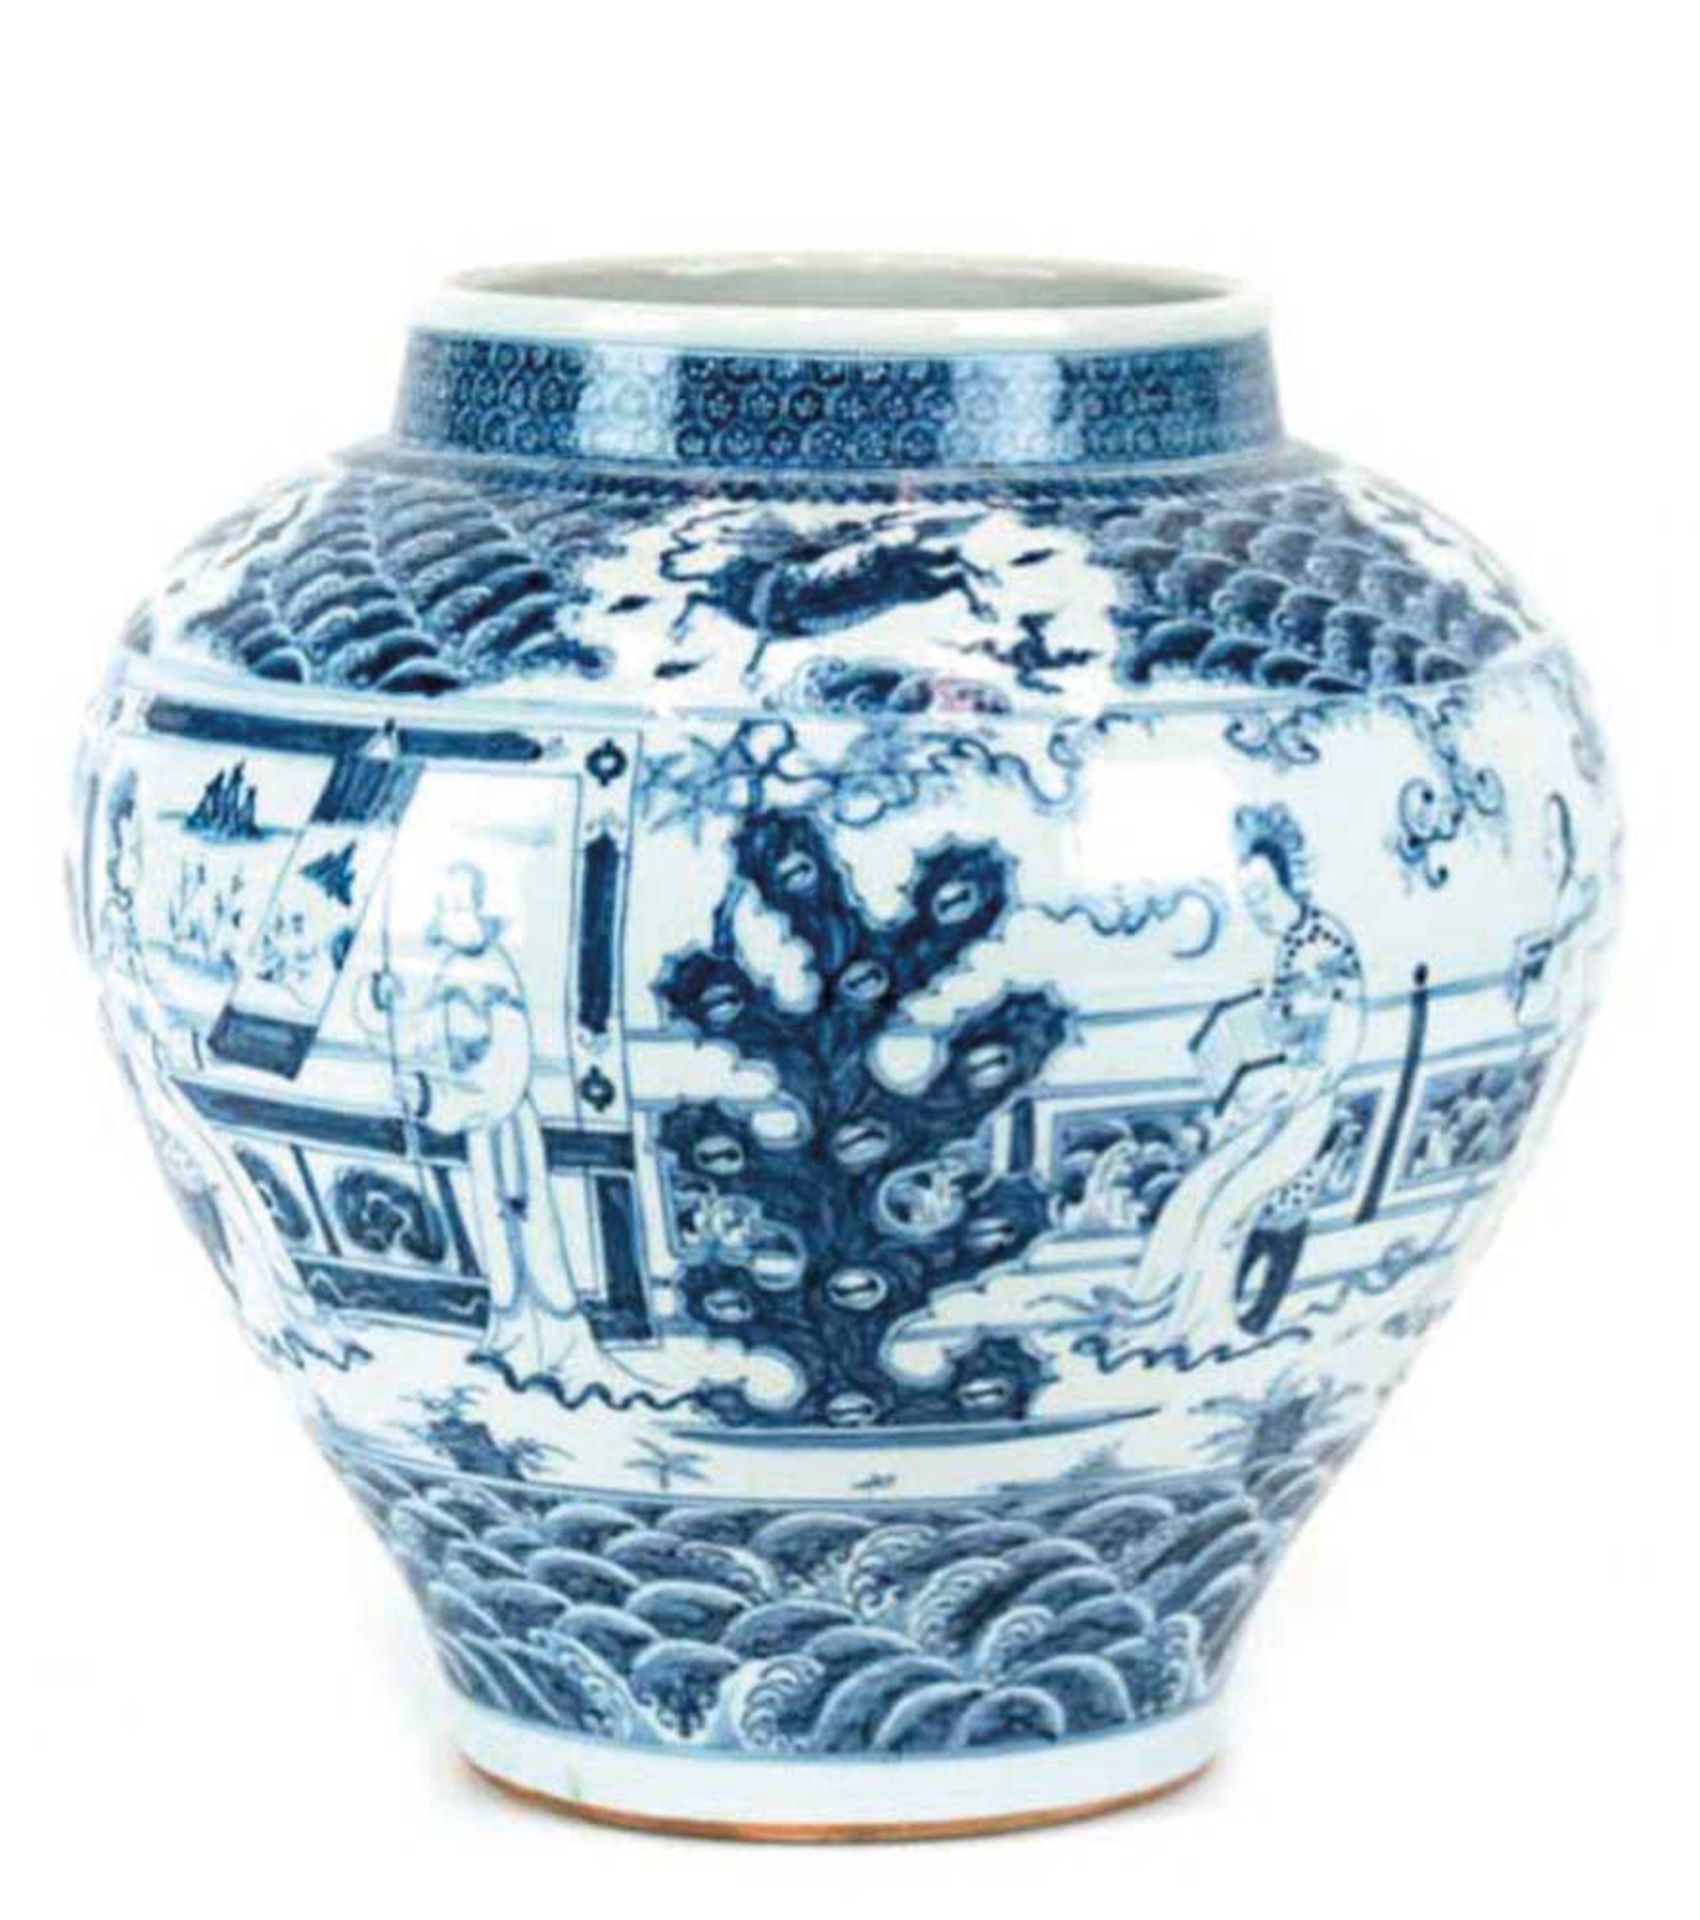 China-Vase, wohl 18. Jh., weiß glasiert, blaue Bemalung, figürliche Szenen undDrachenmotive, H. 36